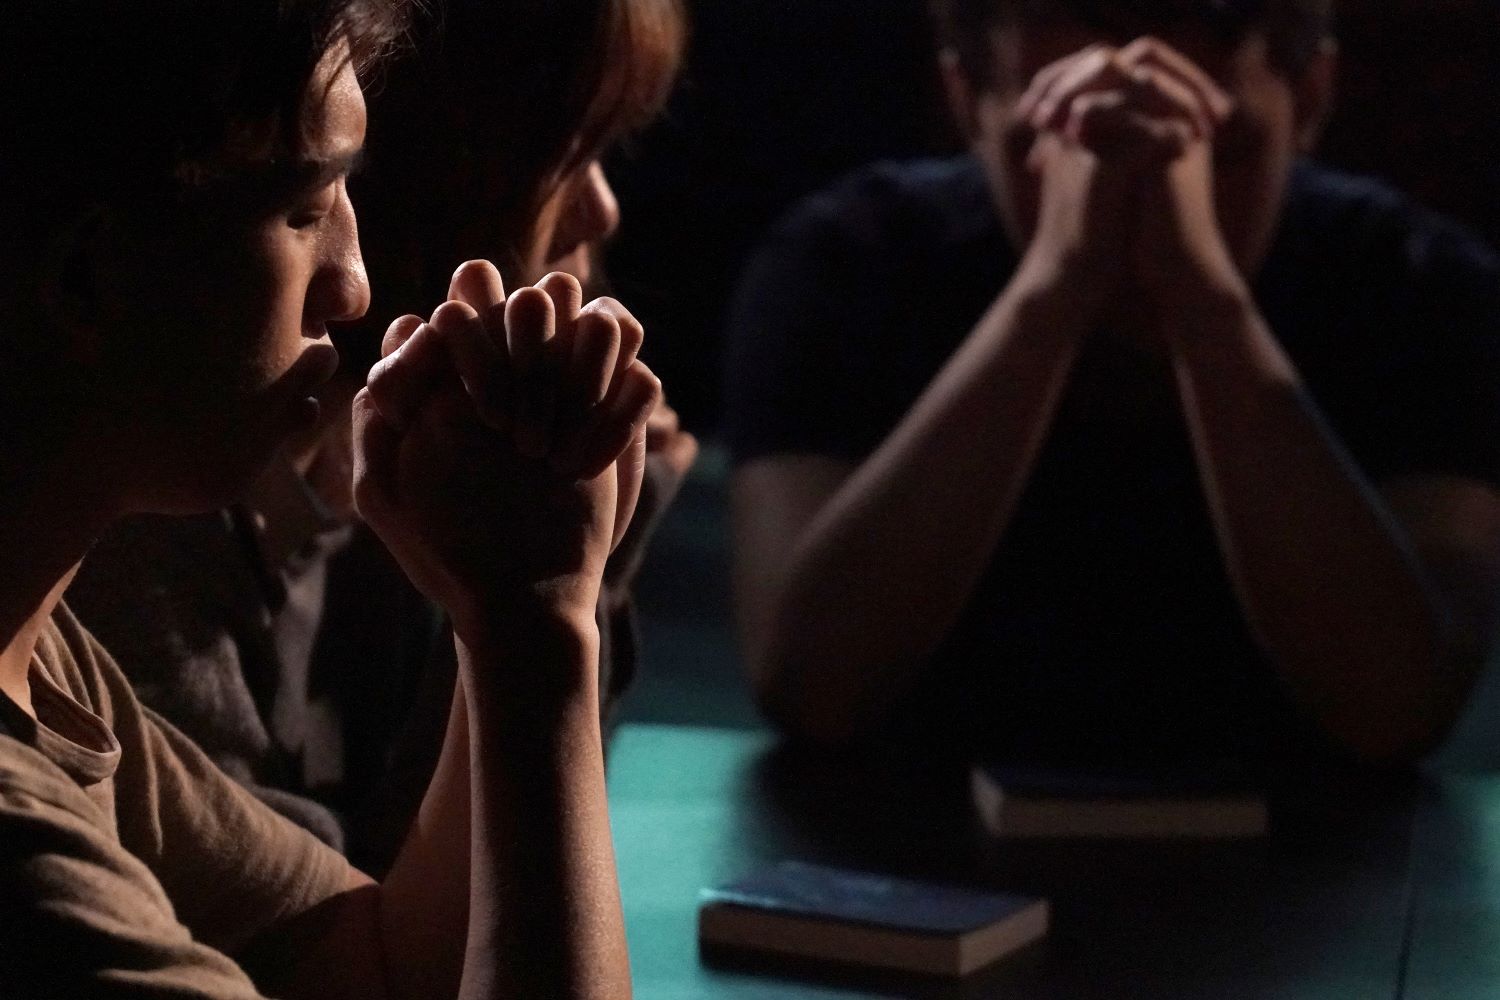 Hämärässä pöydän ääressä kolme henkilöä, jotka rukoilevat. Heidän kätensä ovat ristissä heidän kasvojensa edessä. Pöydällä kaksi kirjaa.